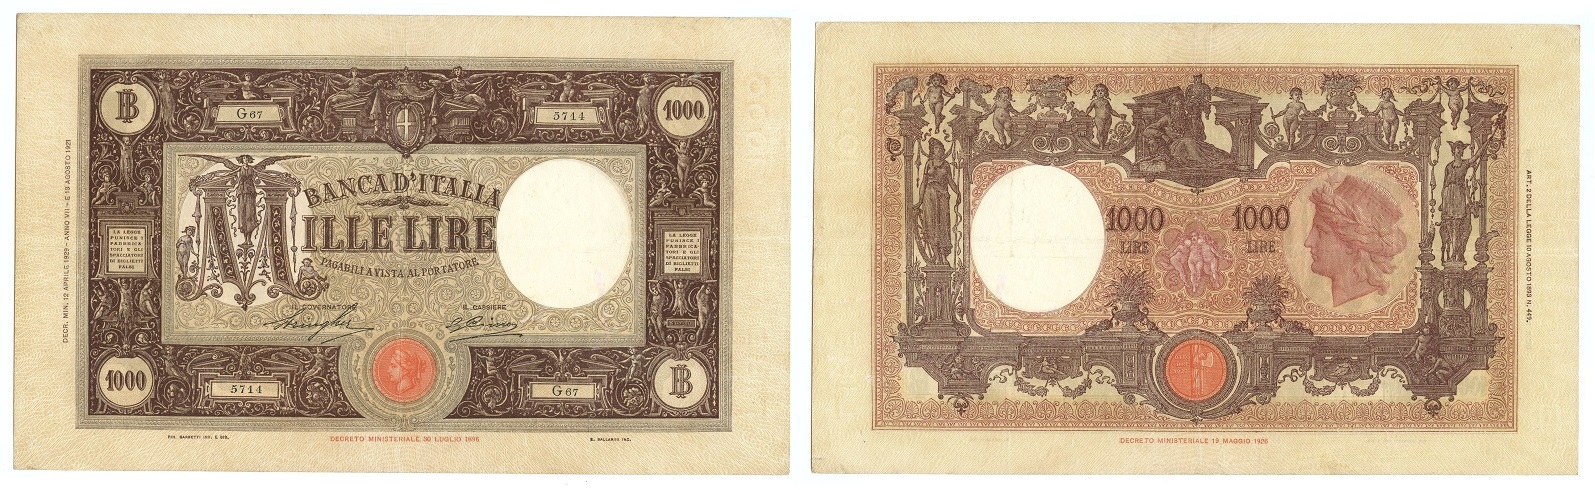 In questa banconota da 1000 lire "Grande M" del 1929 si completa, con l'inserimento dell'anno dell'era fascista, la "rivoluzione del calendario" voluta dal duce